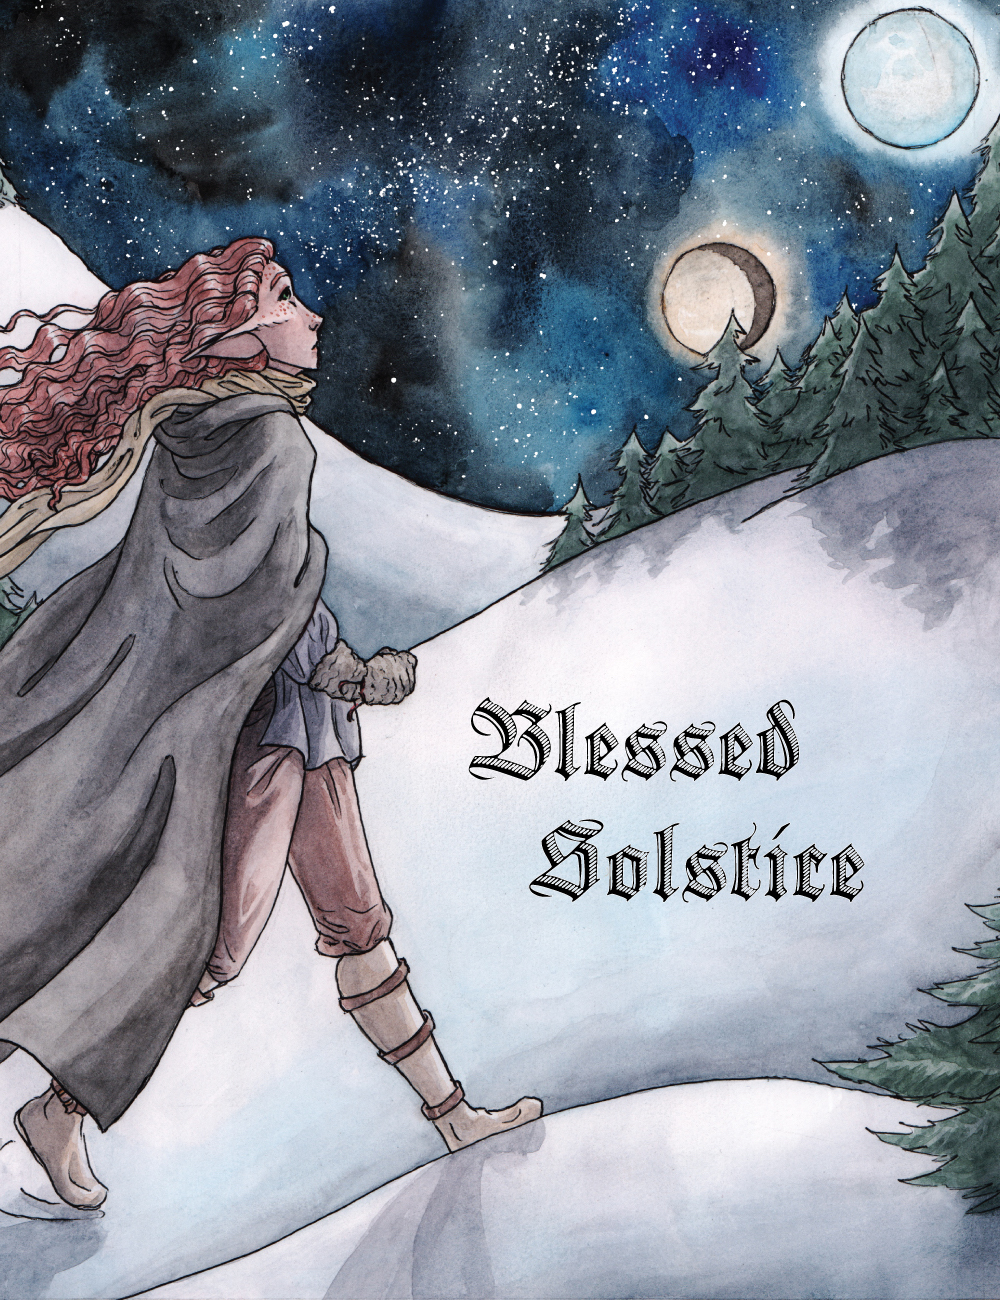 Winter-solstice